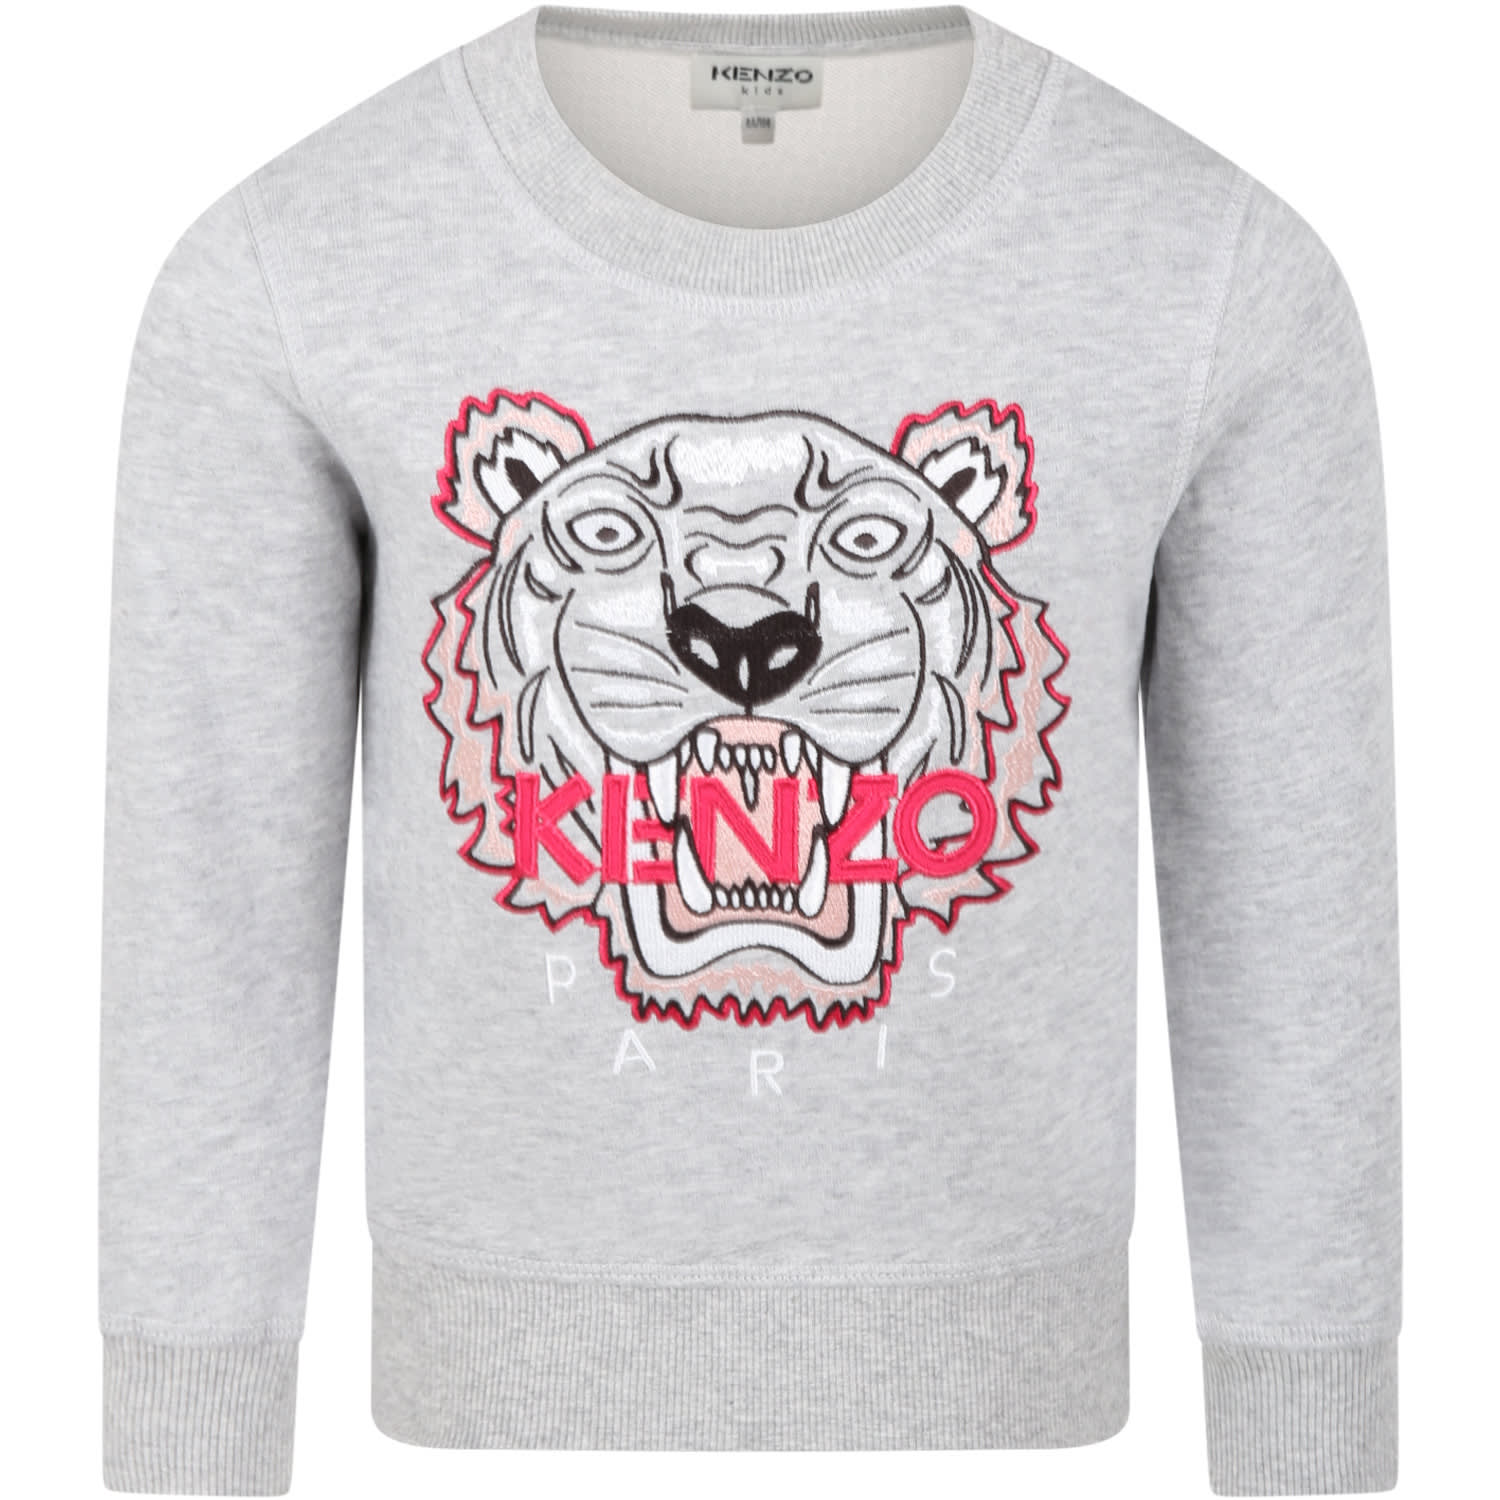 Kenzo Kids Grey Sweatshirt For Girl With Tiger